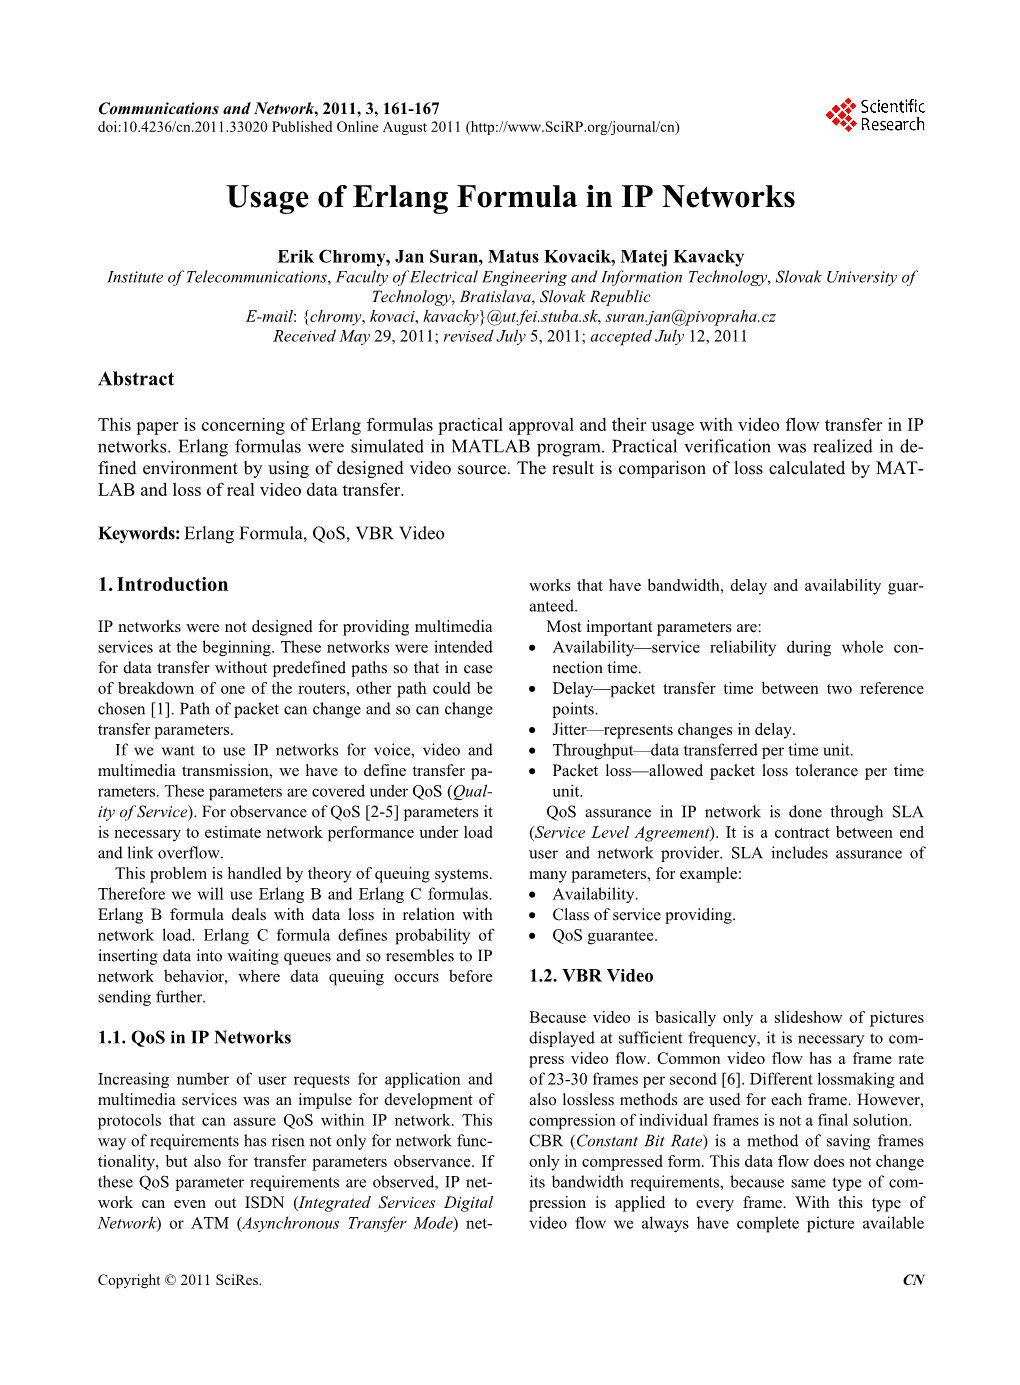 Usage of Erlang Formula in IP Networks